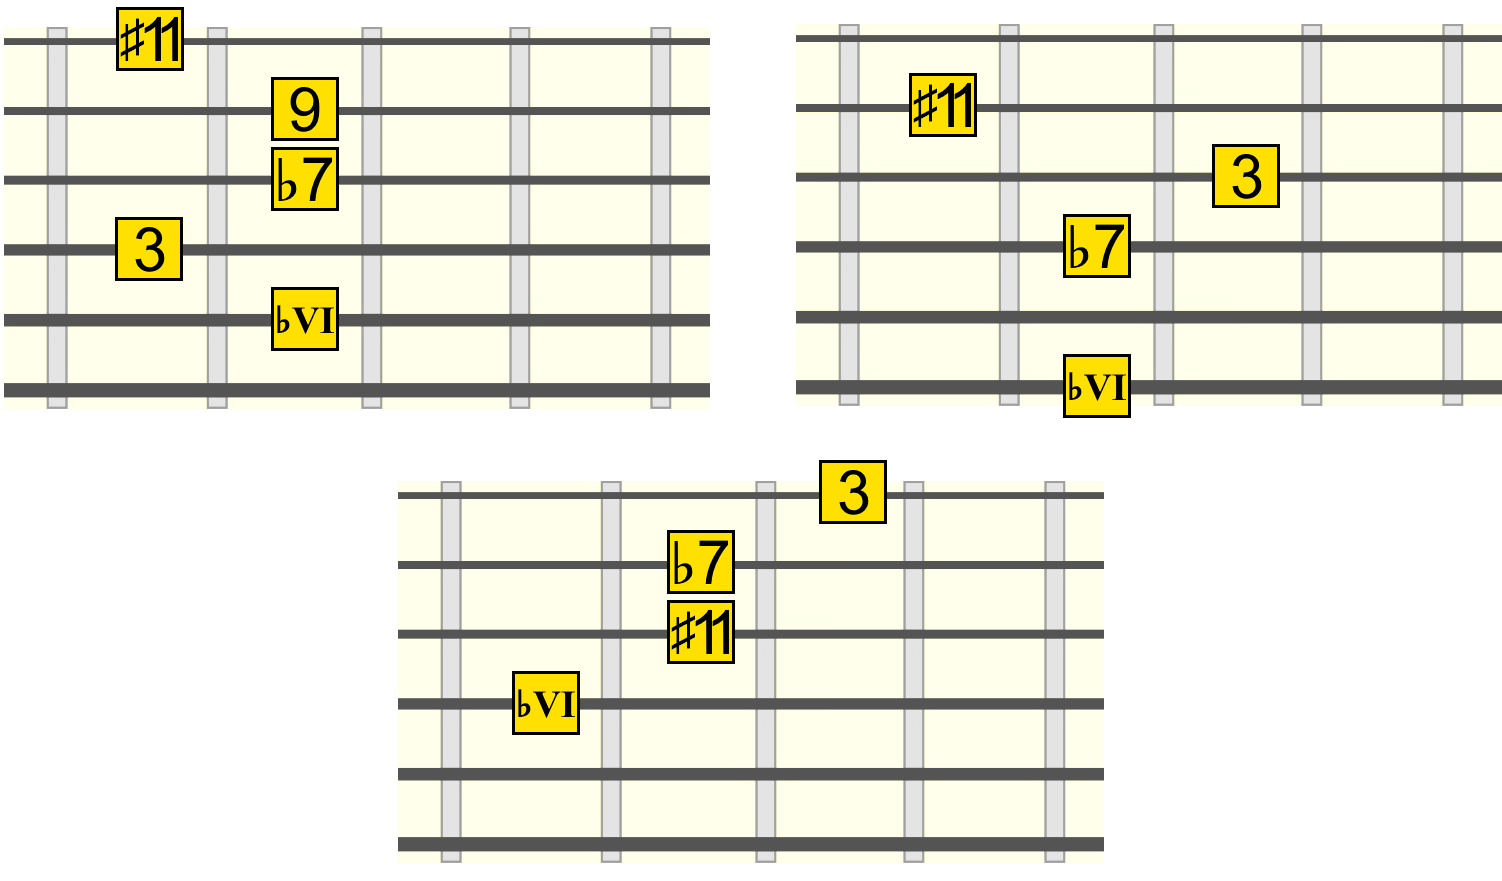 bvi-s11-root-strings